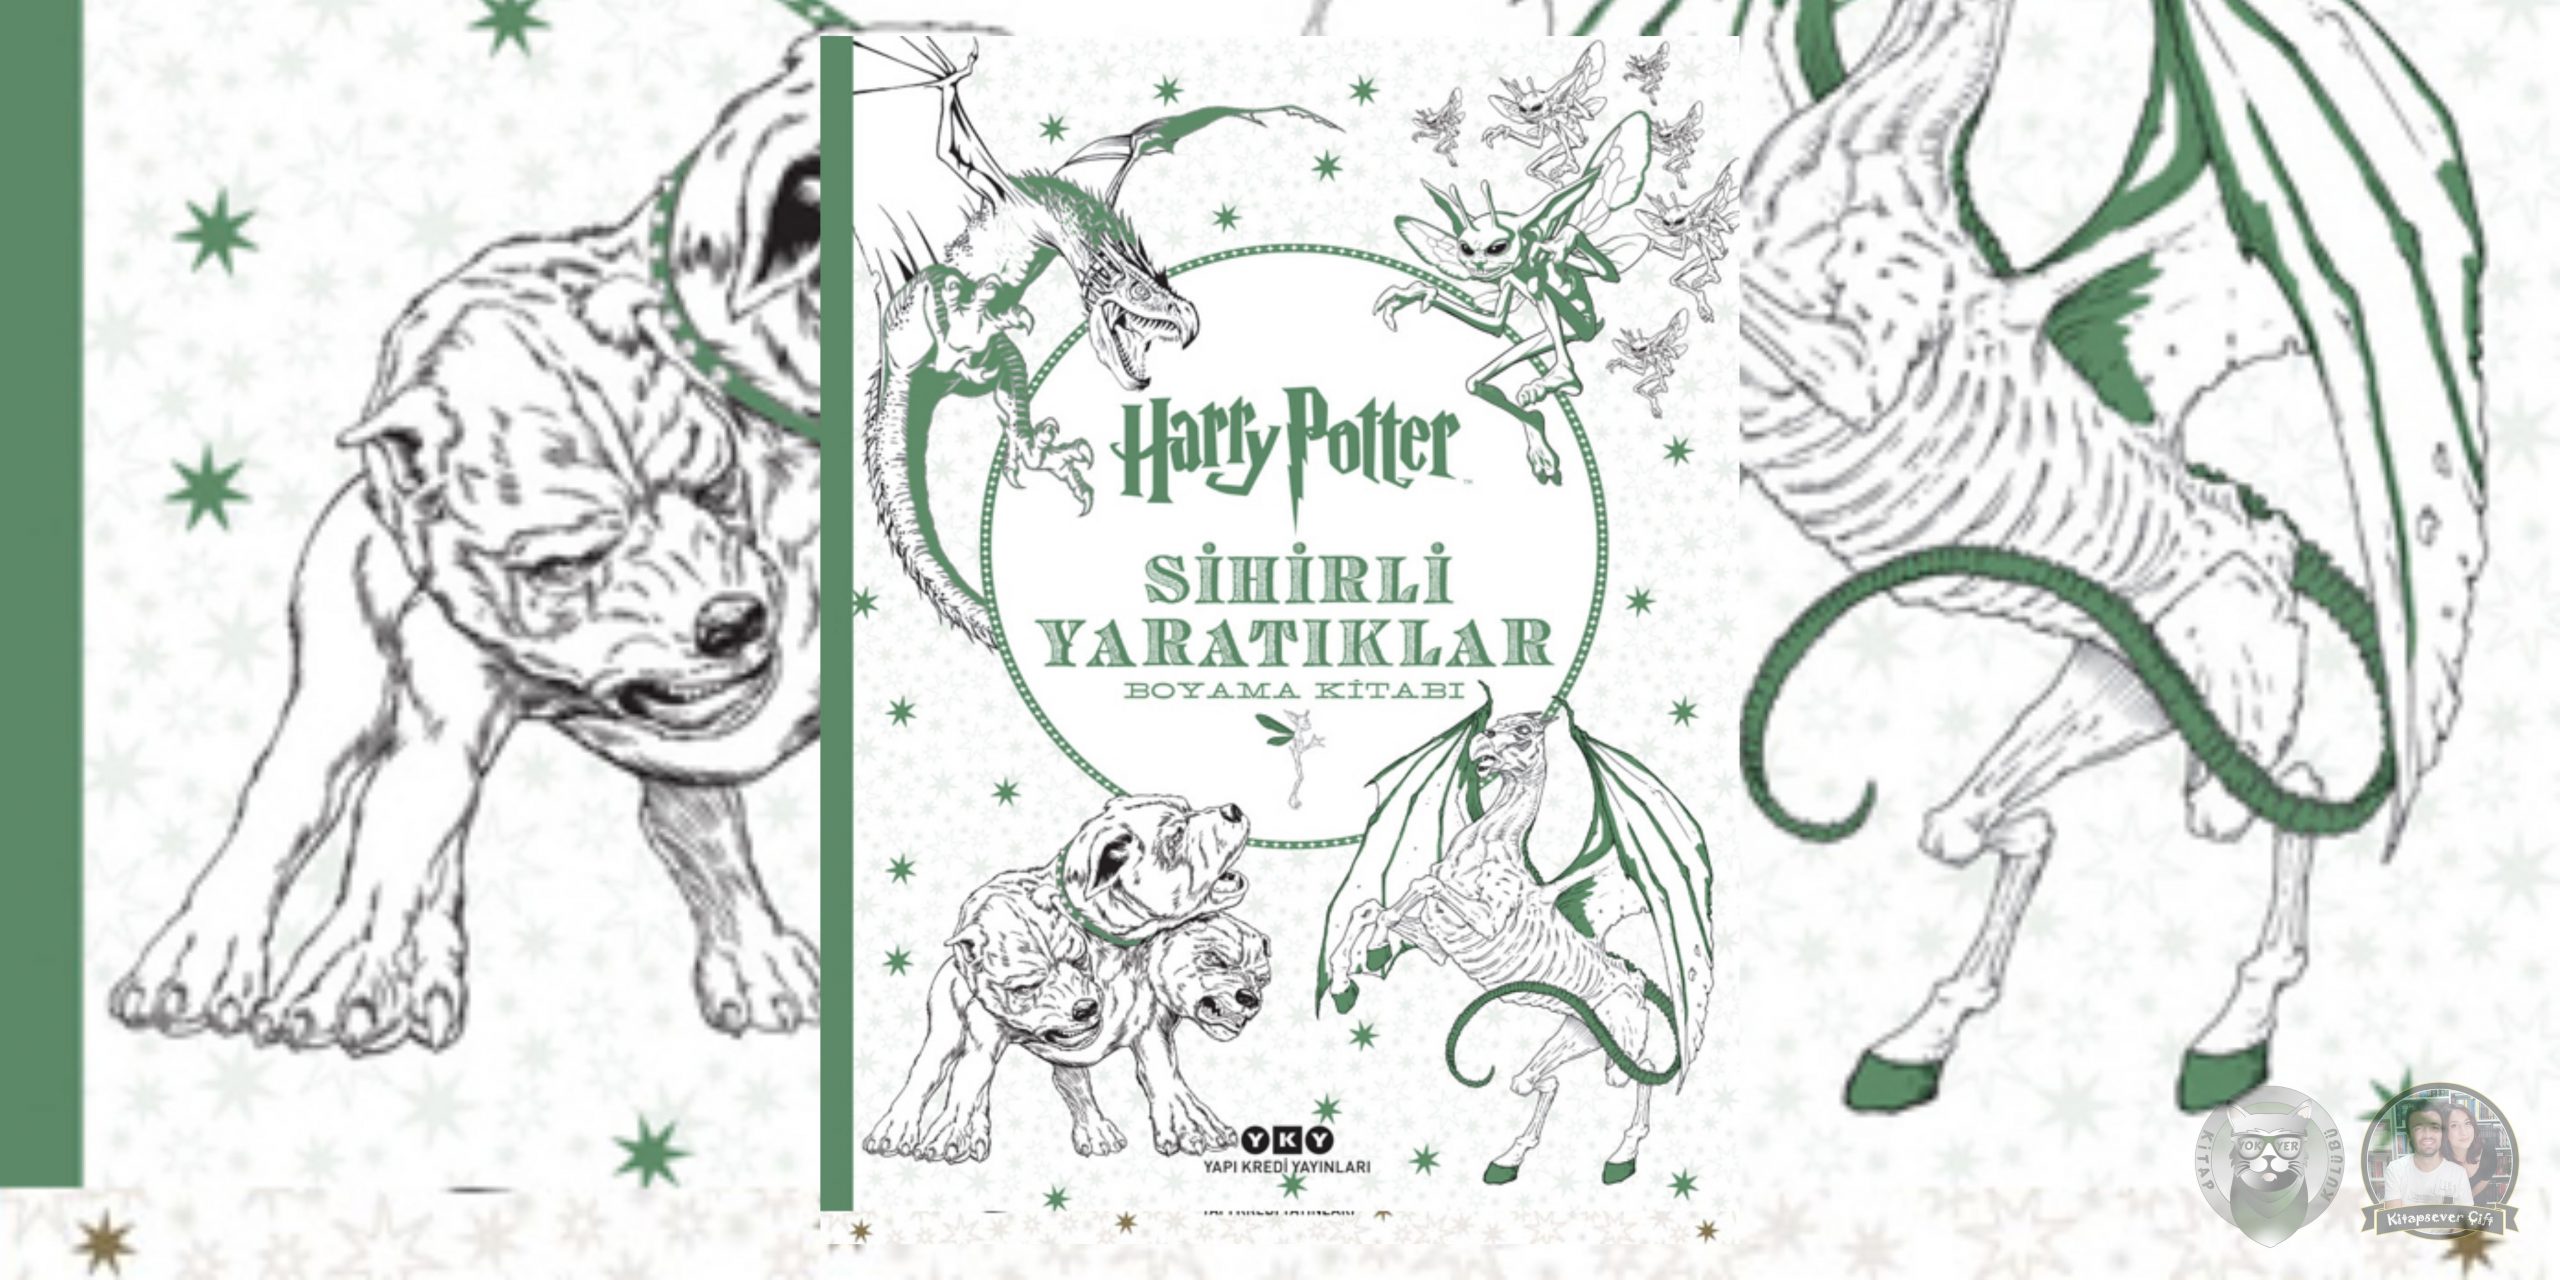 harry potter serisi ve daha fazlası 22 – harry potter sihirli yaratiklar boyama kitabi scaled